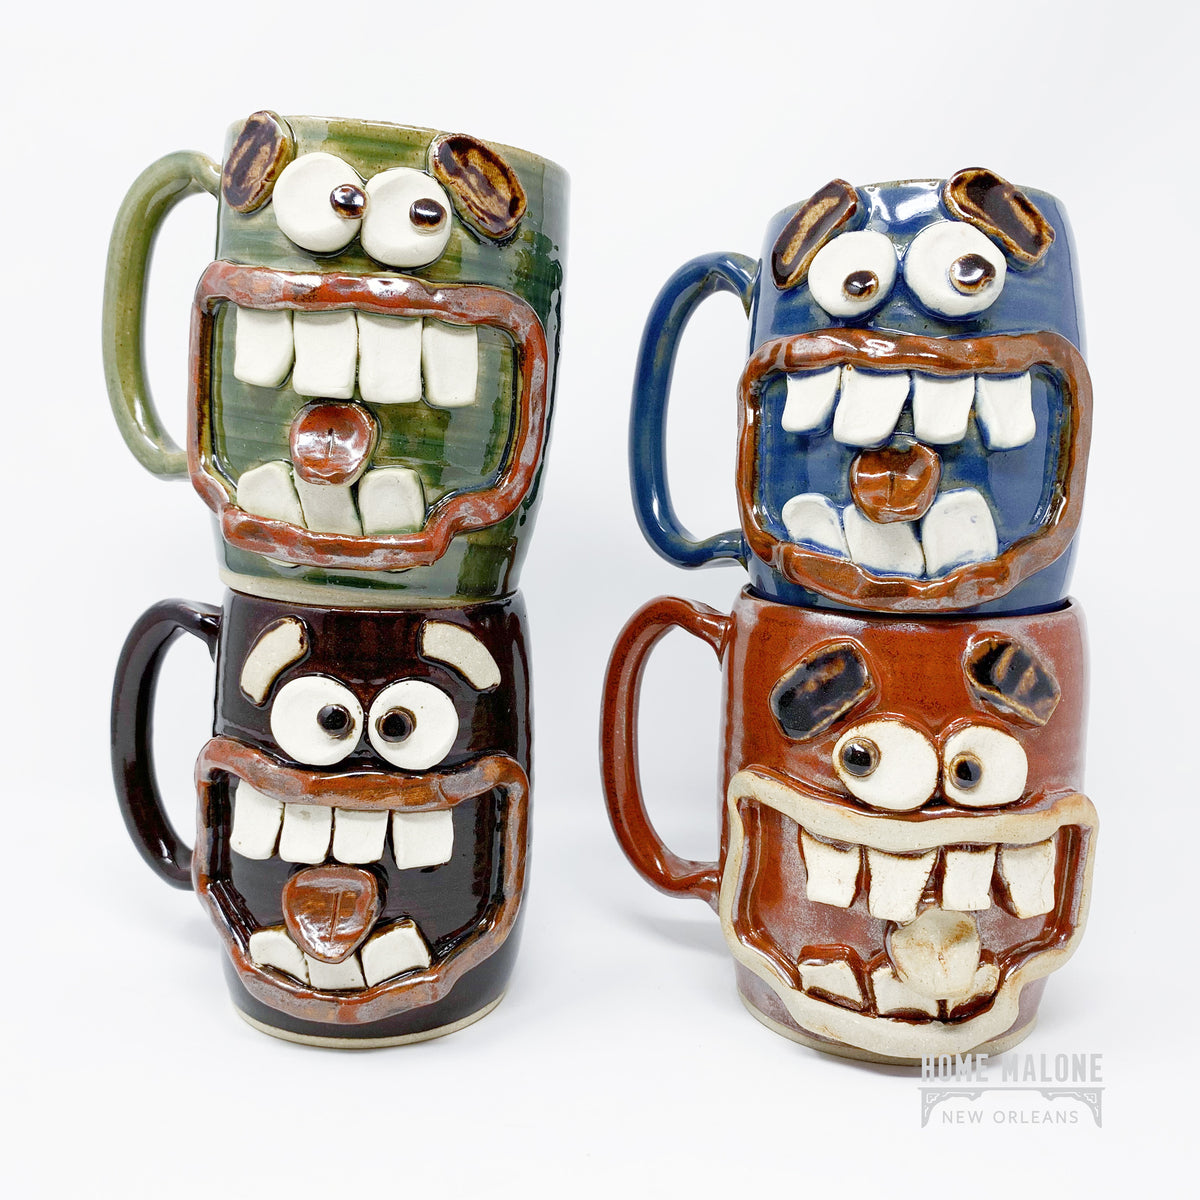 Funny Mug, Large Coffee Mug, Large Mug, Large Mugs, Novelty, Funny, Coffee  Mug, Mug, Ceramic Mug, Funny Coffee Mugs, Ceramic Mugs, 